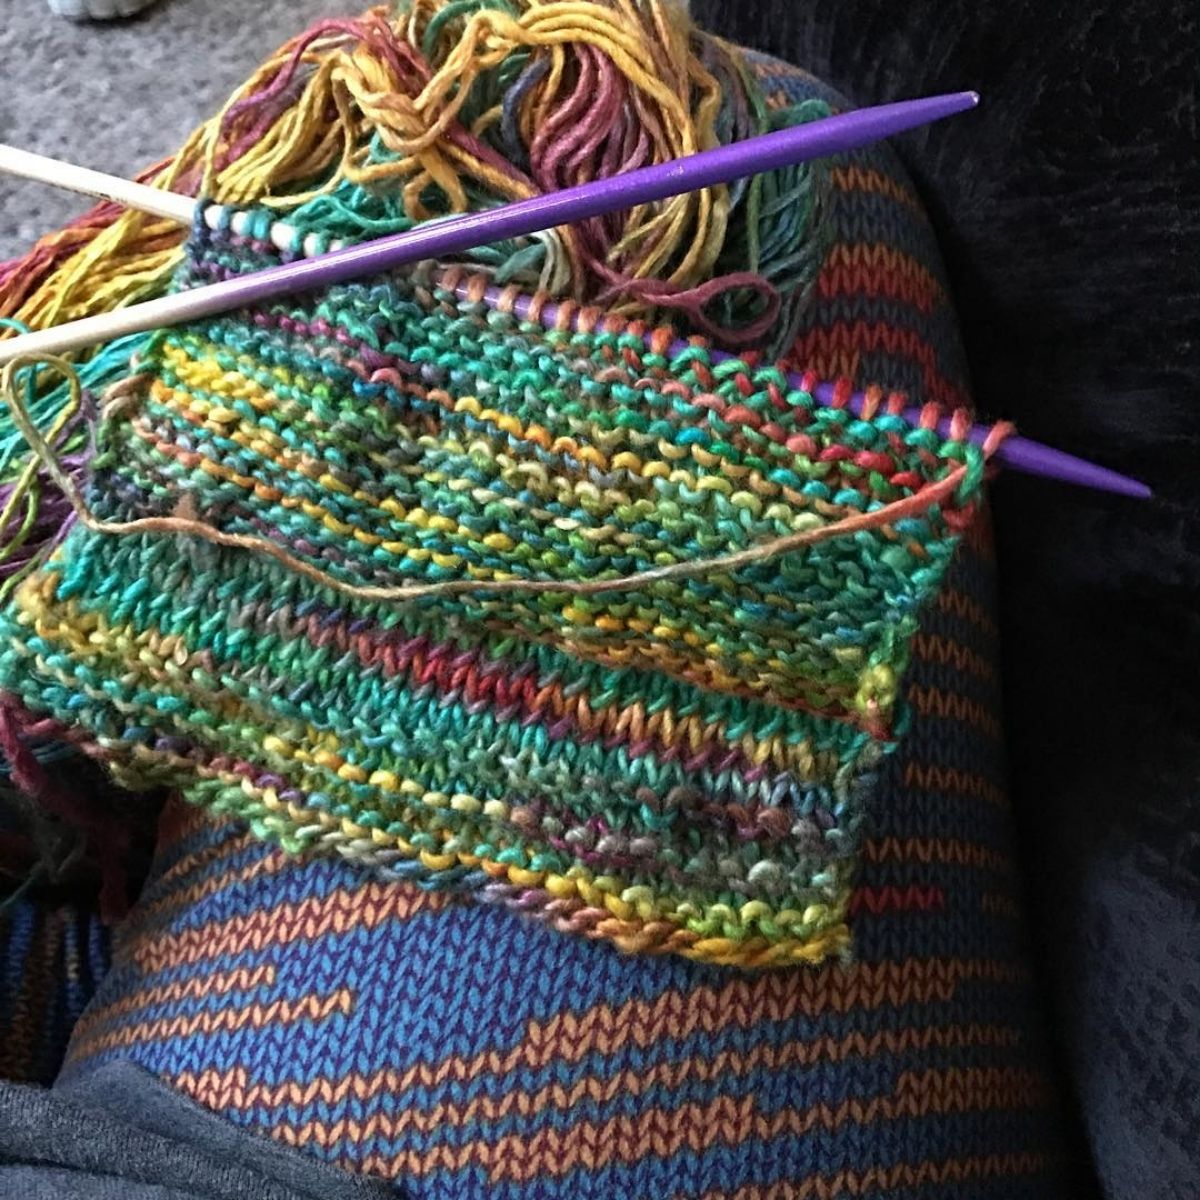 Knitting For Beginners 